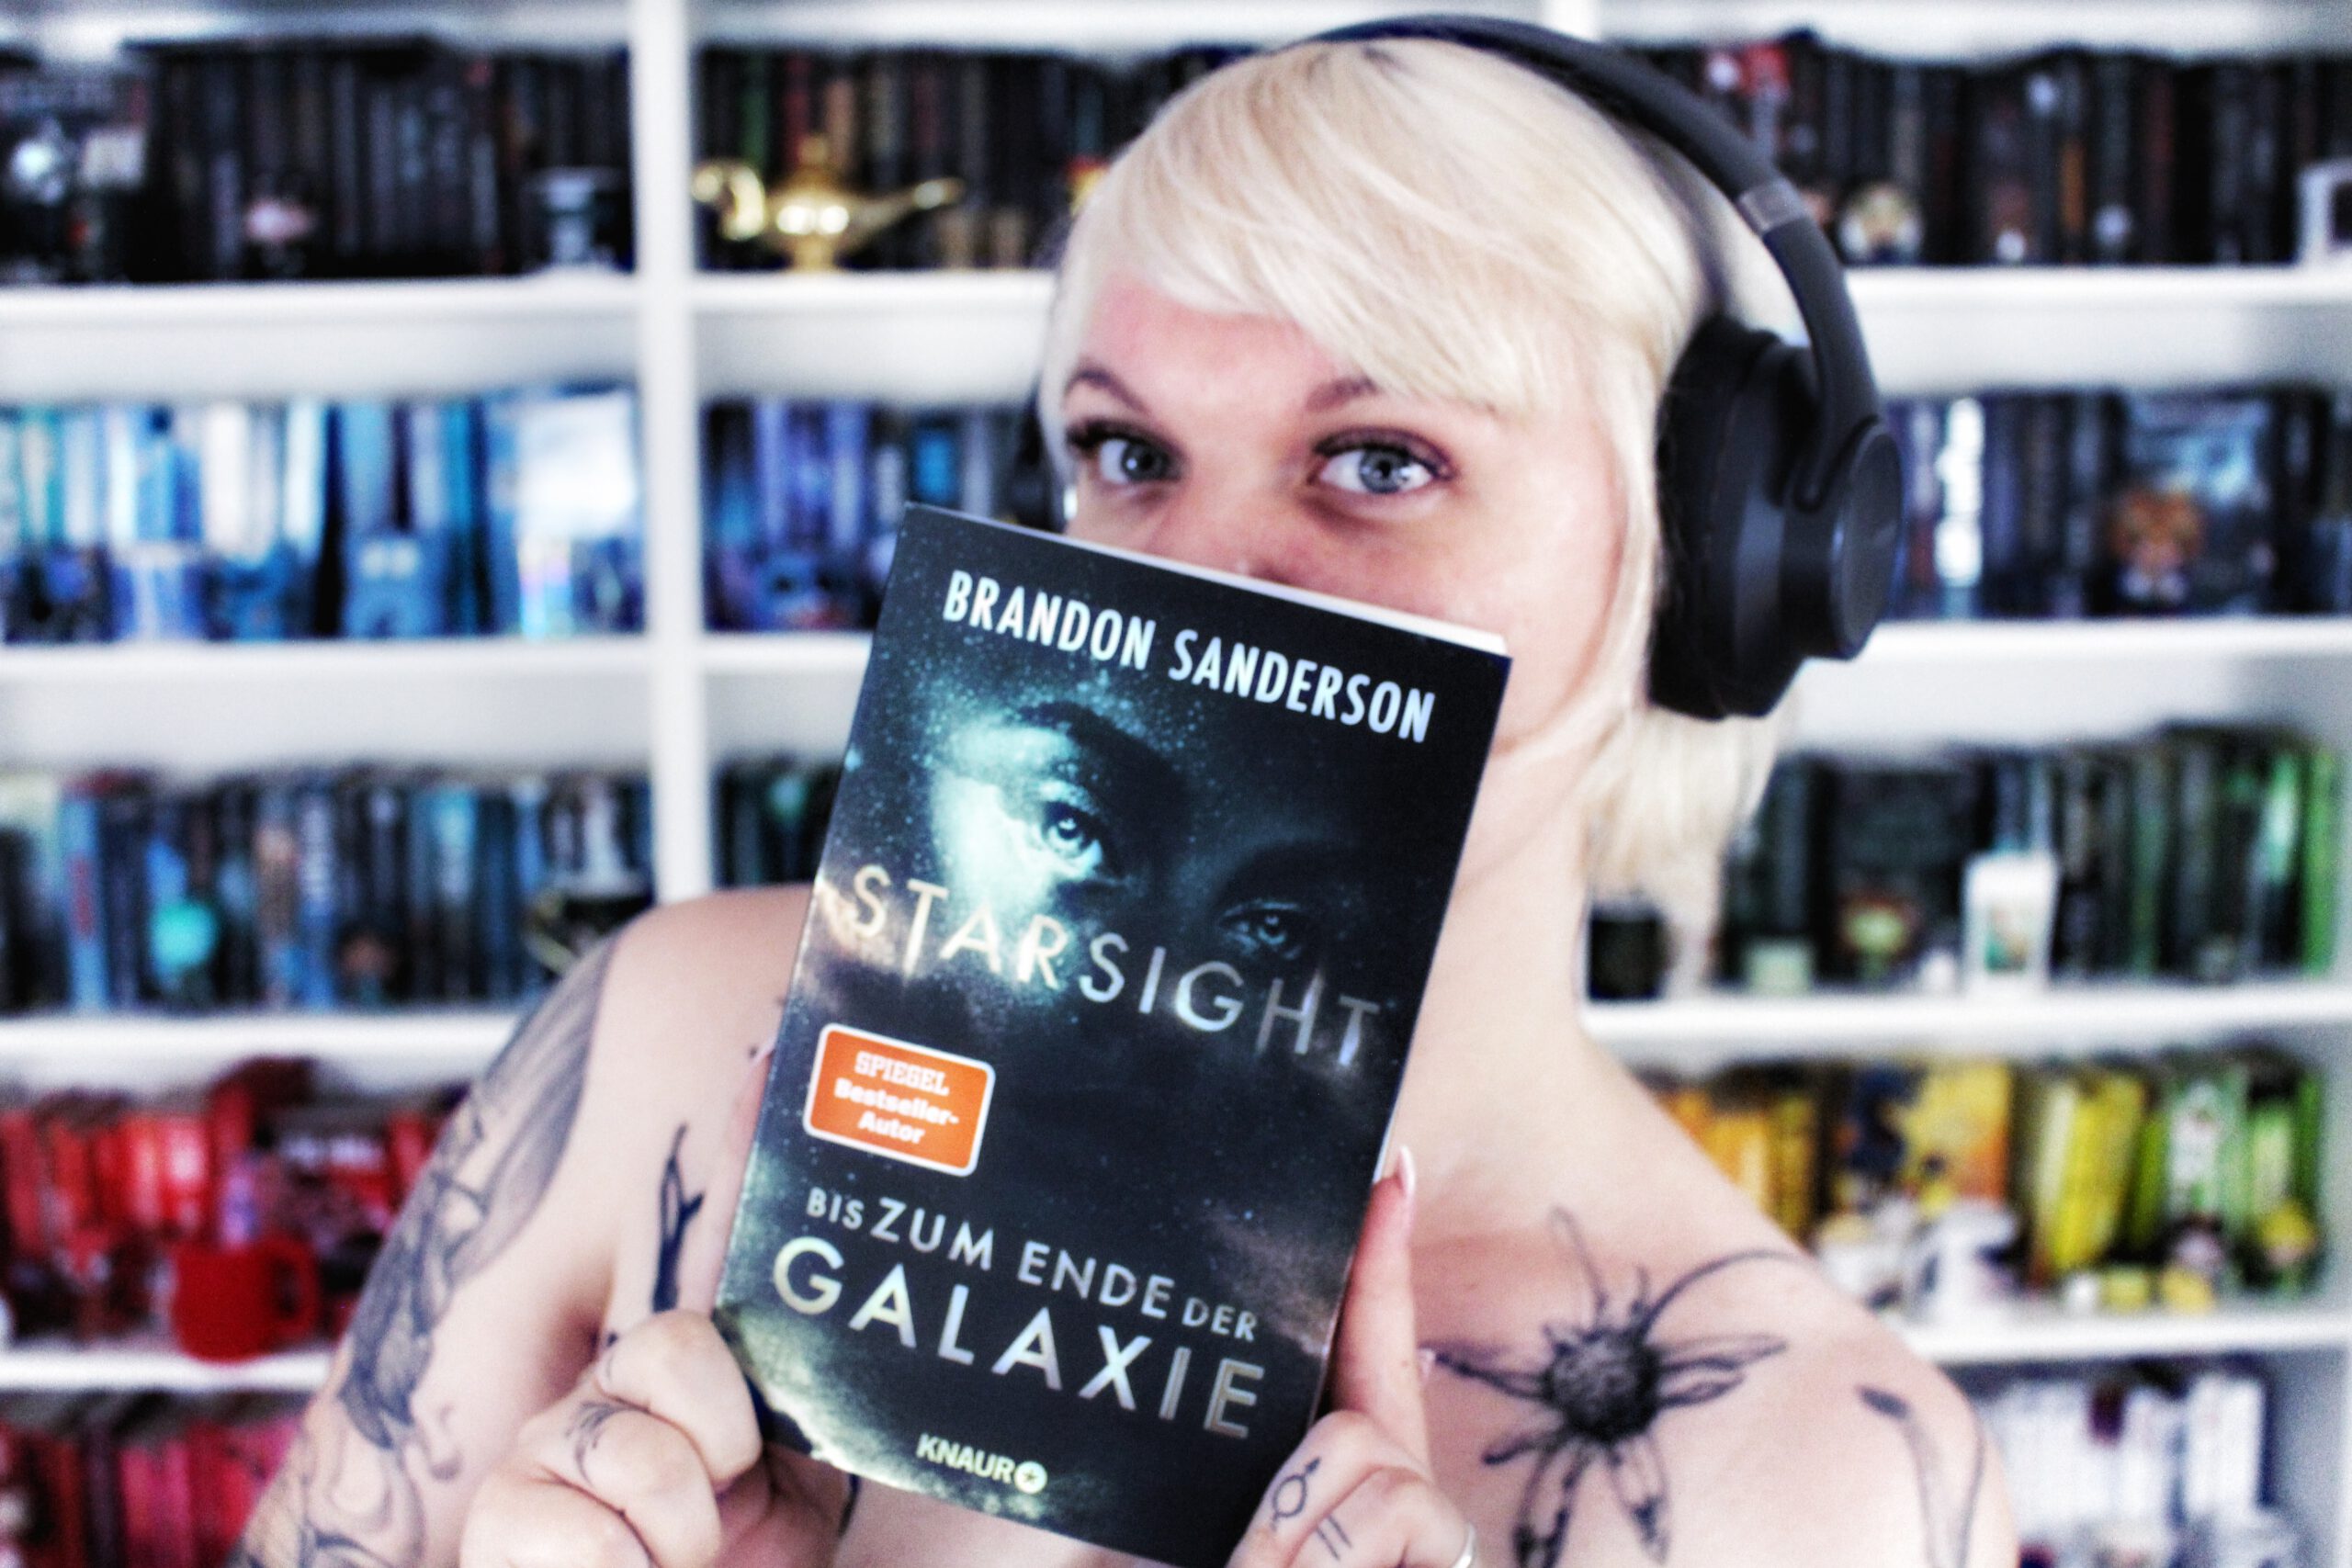 Rezension | Starsight von Brandon Sanderson